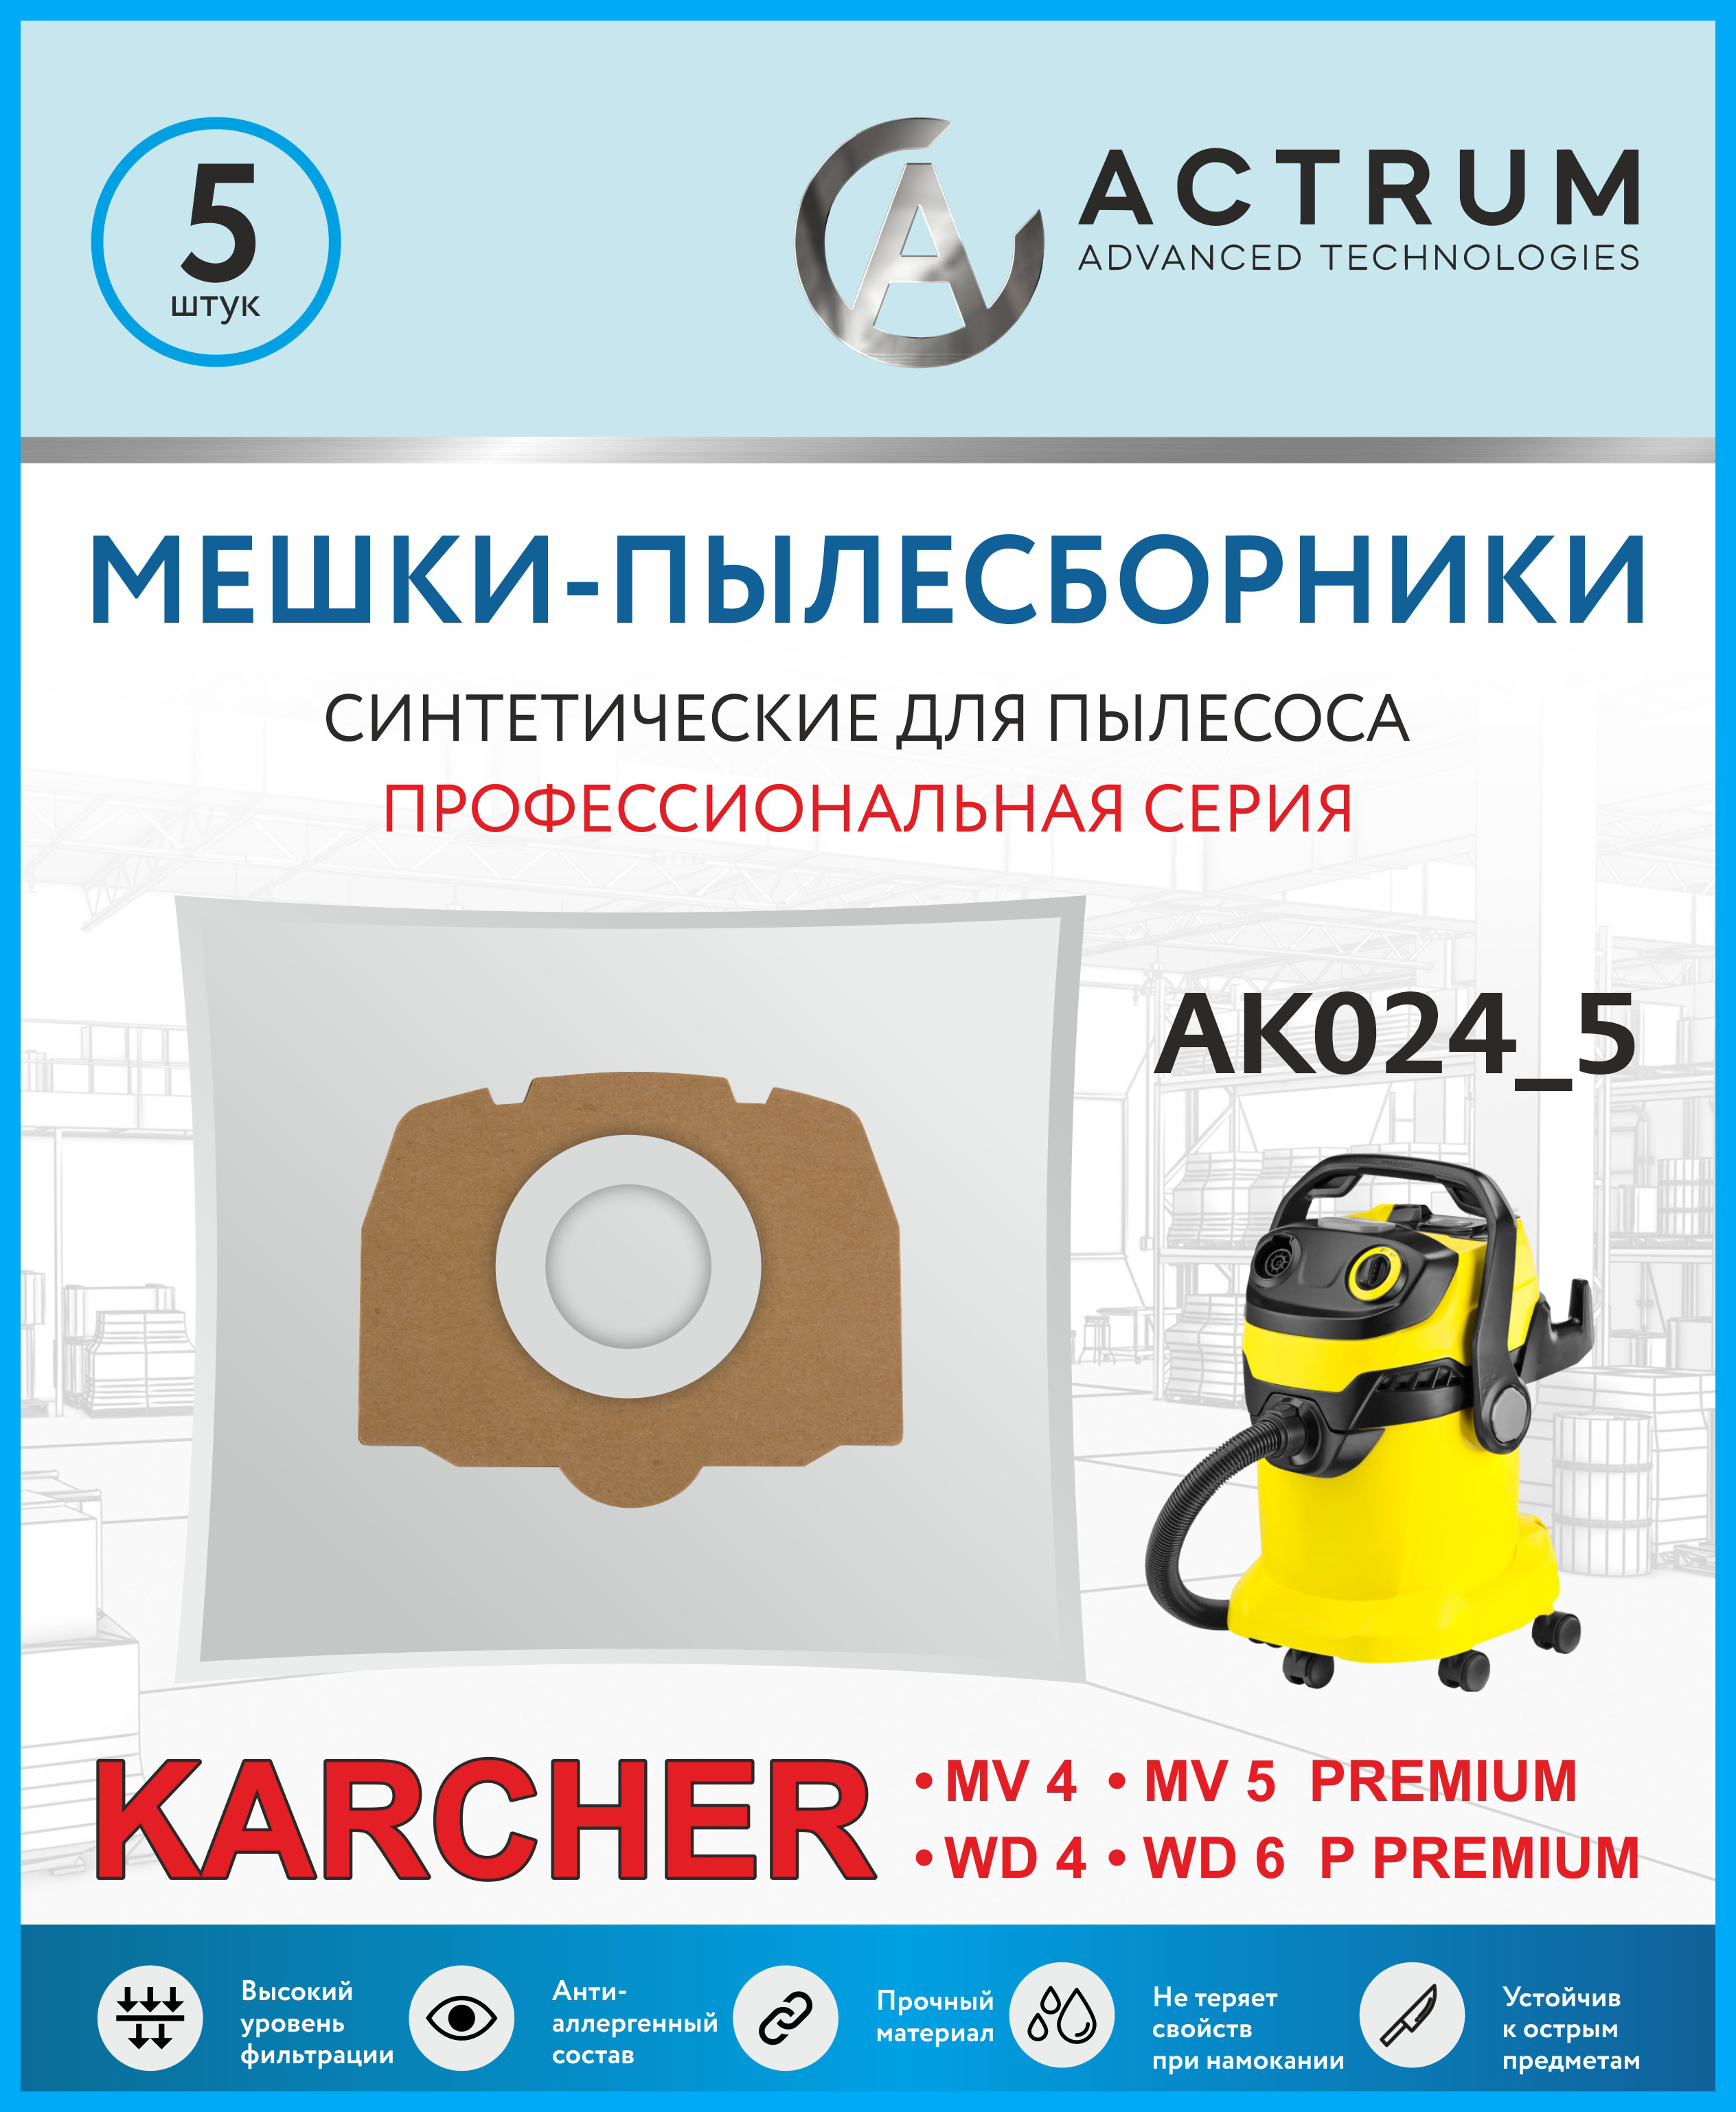 Пылесборники Actrum AK024_5 для промышленных пылесосов KARCHER MV 4, MV 5, WD 4, WD 5